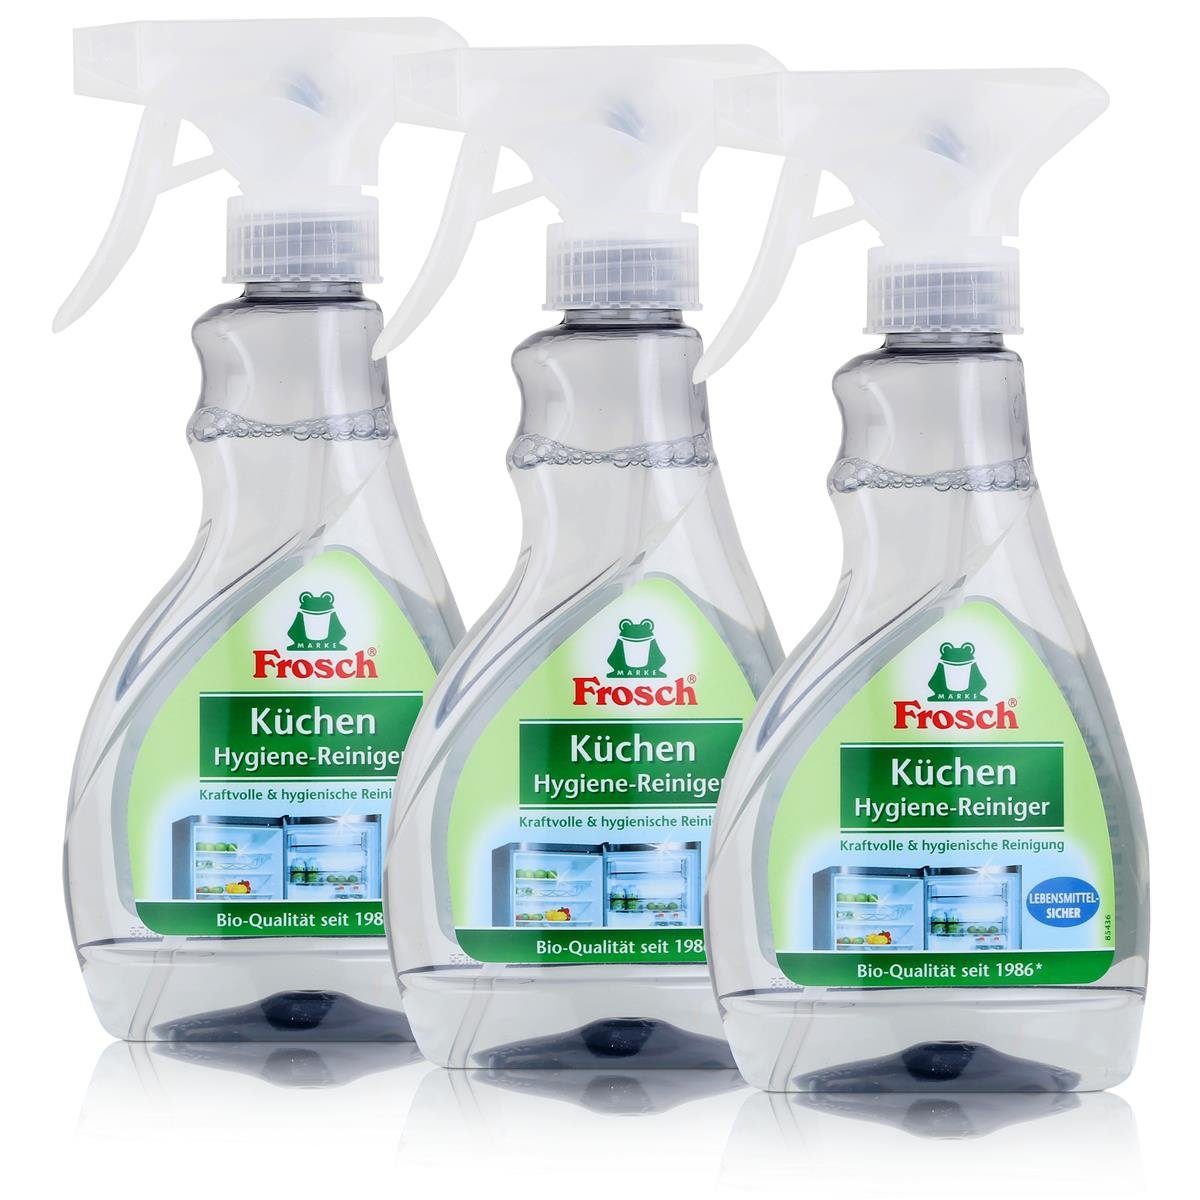 FROSCH Frosch Küchen Hygiene-Reiniger 300ml - Lebensmittel-Sicher (3er Pack) Küchenreiniger